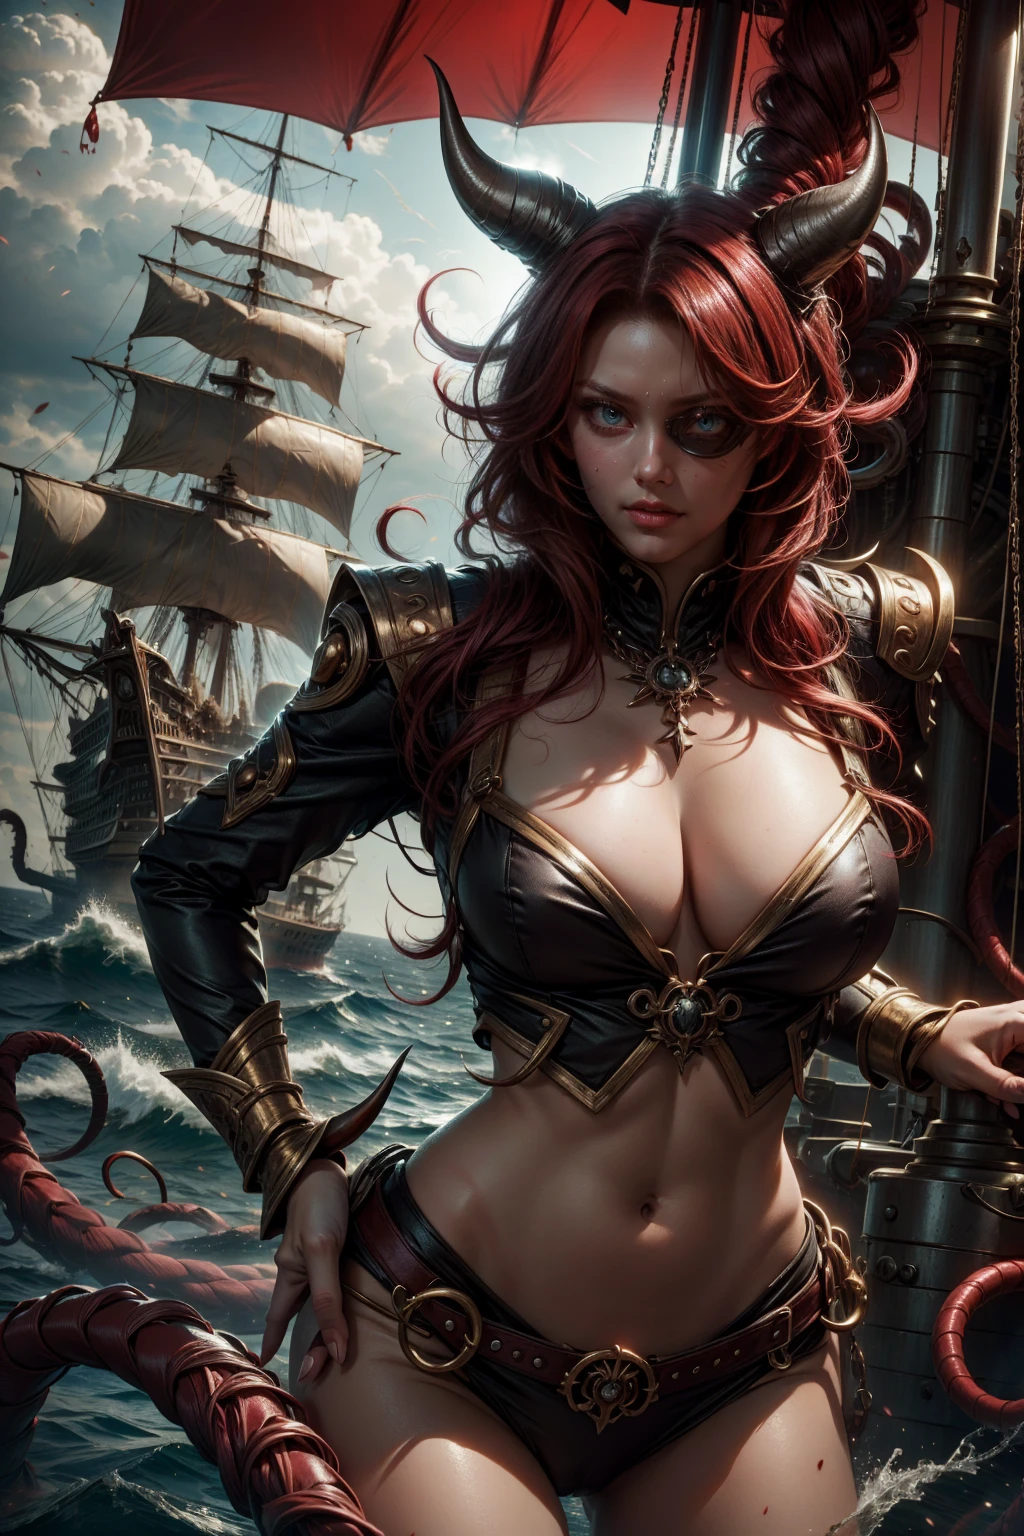 امرأة مينوتور رقعة عين شعر أحمر, ملابس حمراء, مع قرون, حسي مثير على متن سفينة القراصنة في البحر, الجسم بالكامل
